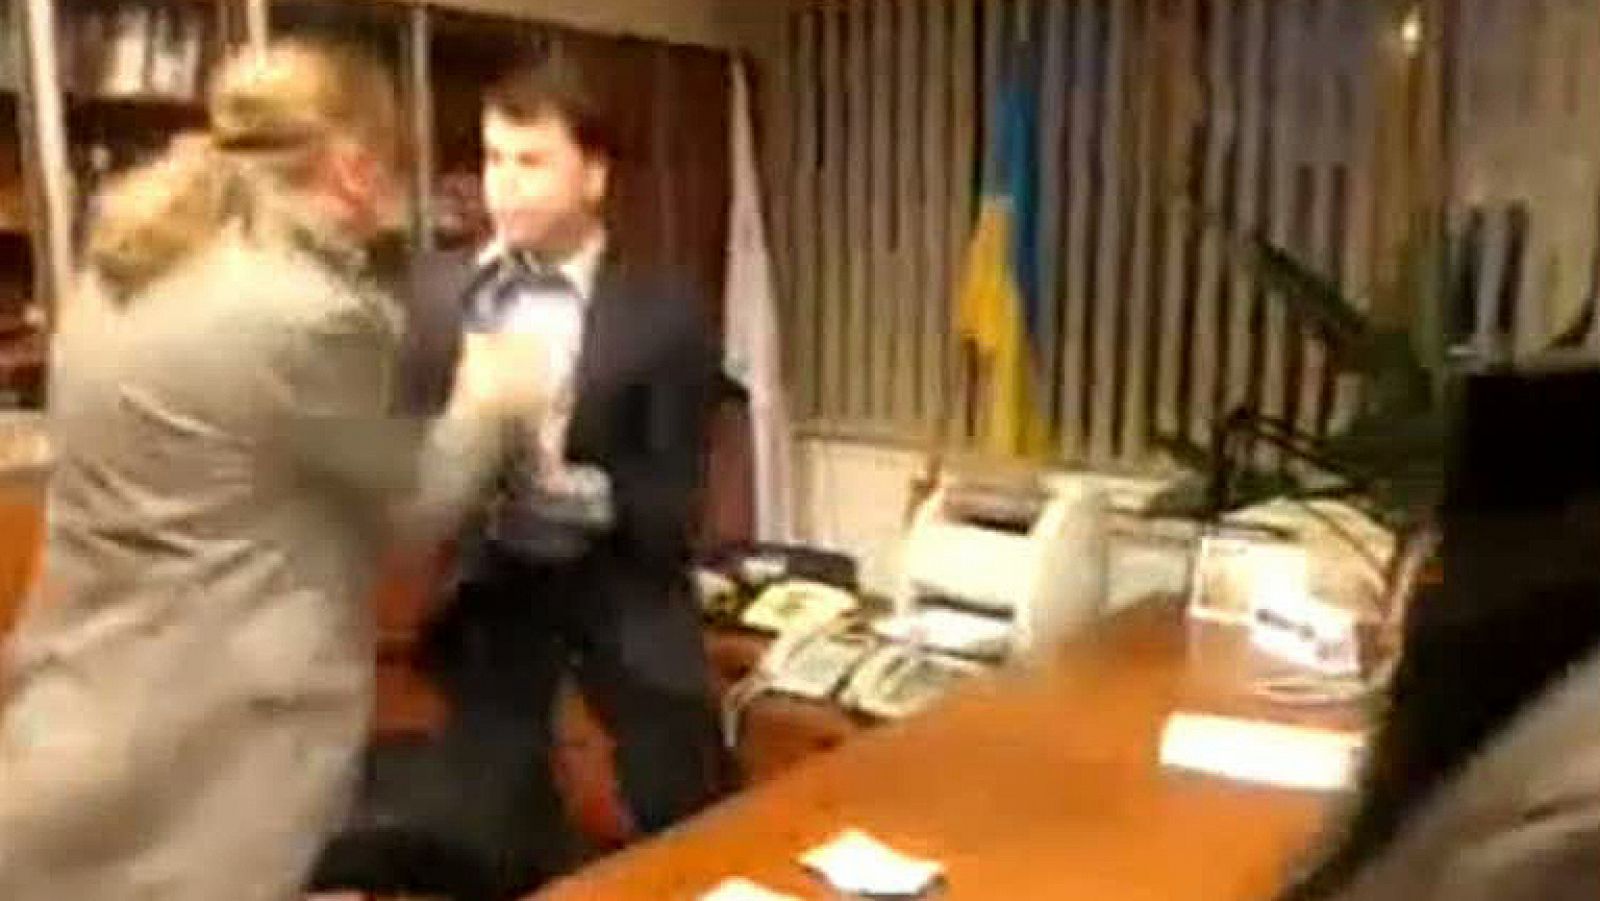  Tres miembros de Svoboda, el partido de extrema derecha que cuenta con tres ministros en el nuevo Gobierno ucraniano, irrumpieron este martes por la noche en el despacho del director de la cadena pública ucraniana NTV y le obligaron a firmar su dimisión tras asestarle varios golpes.